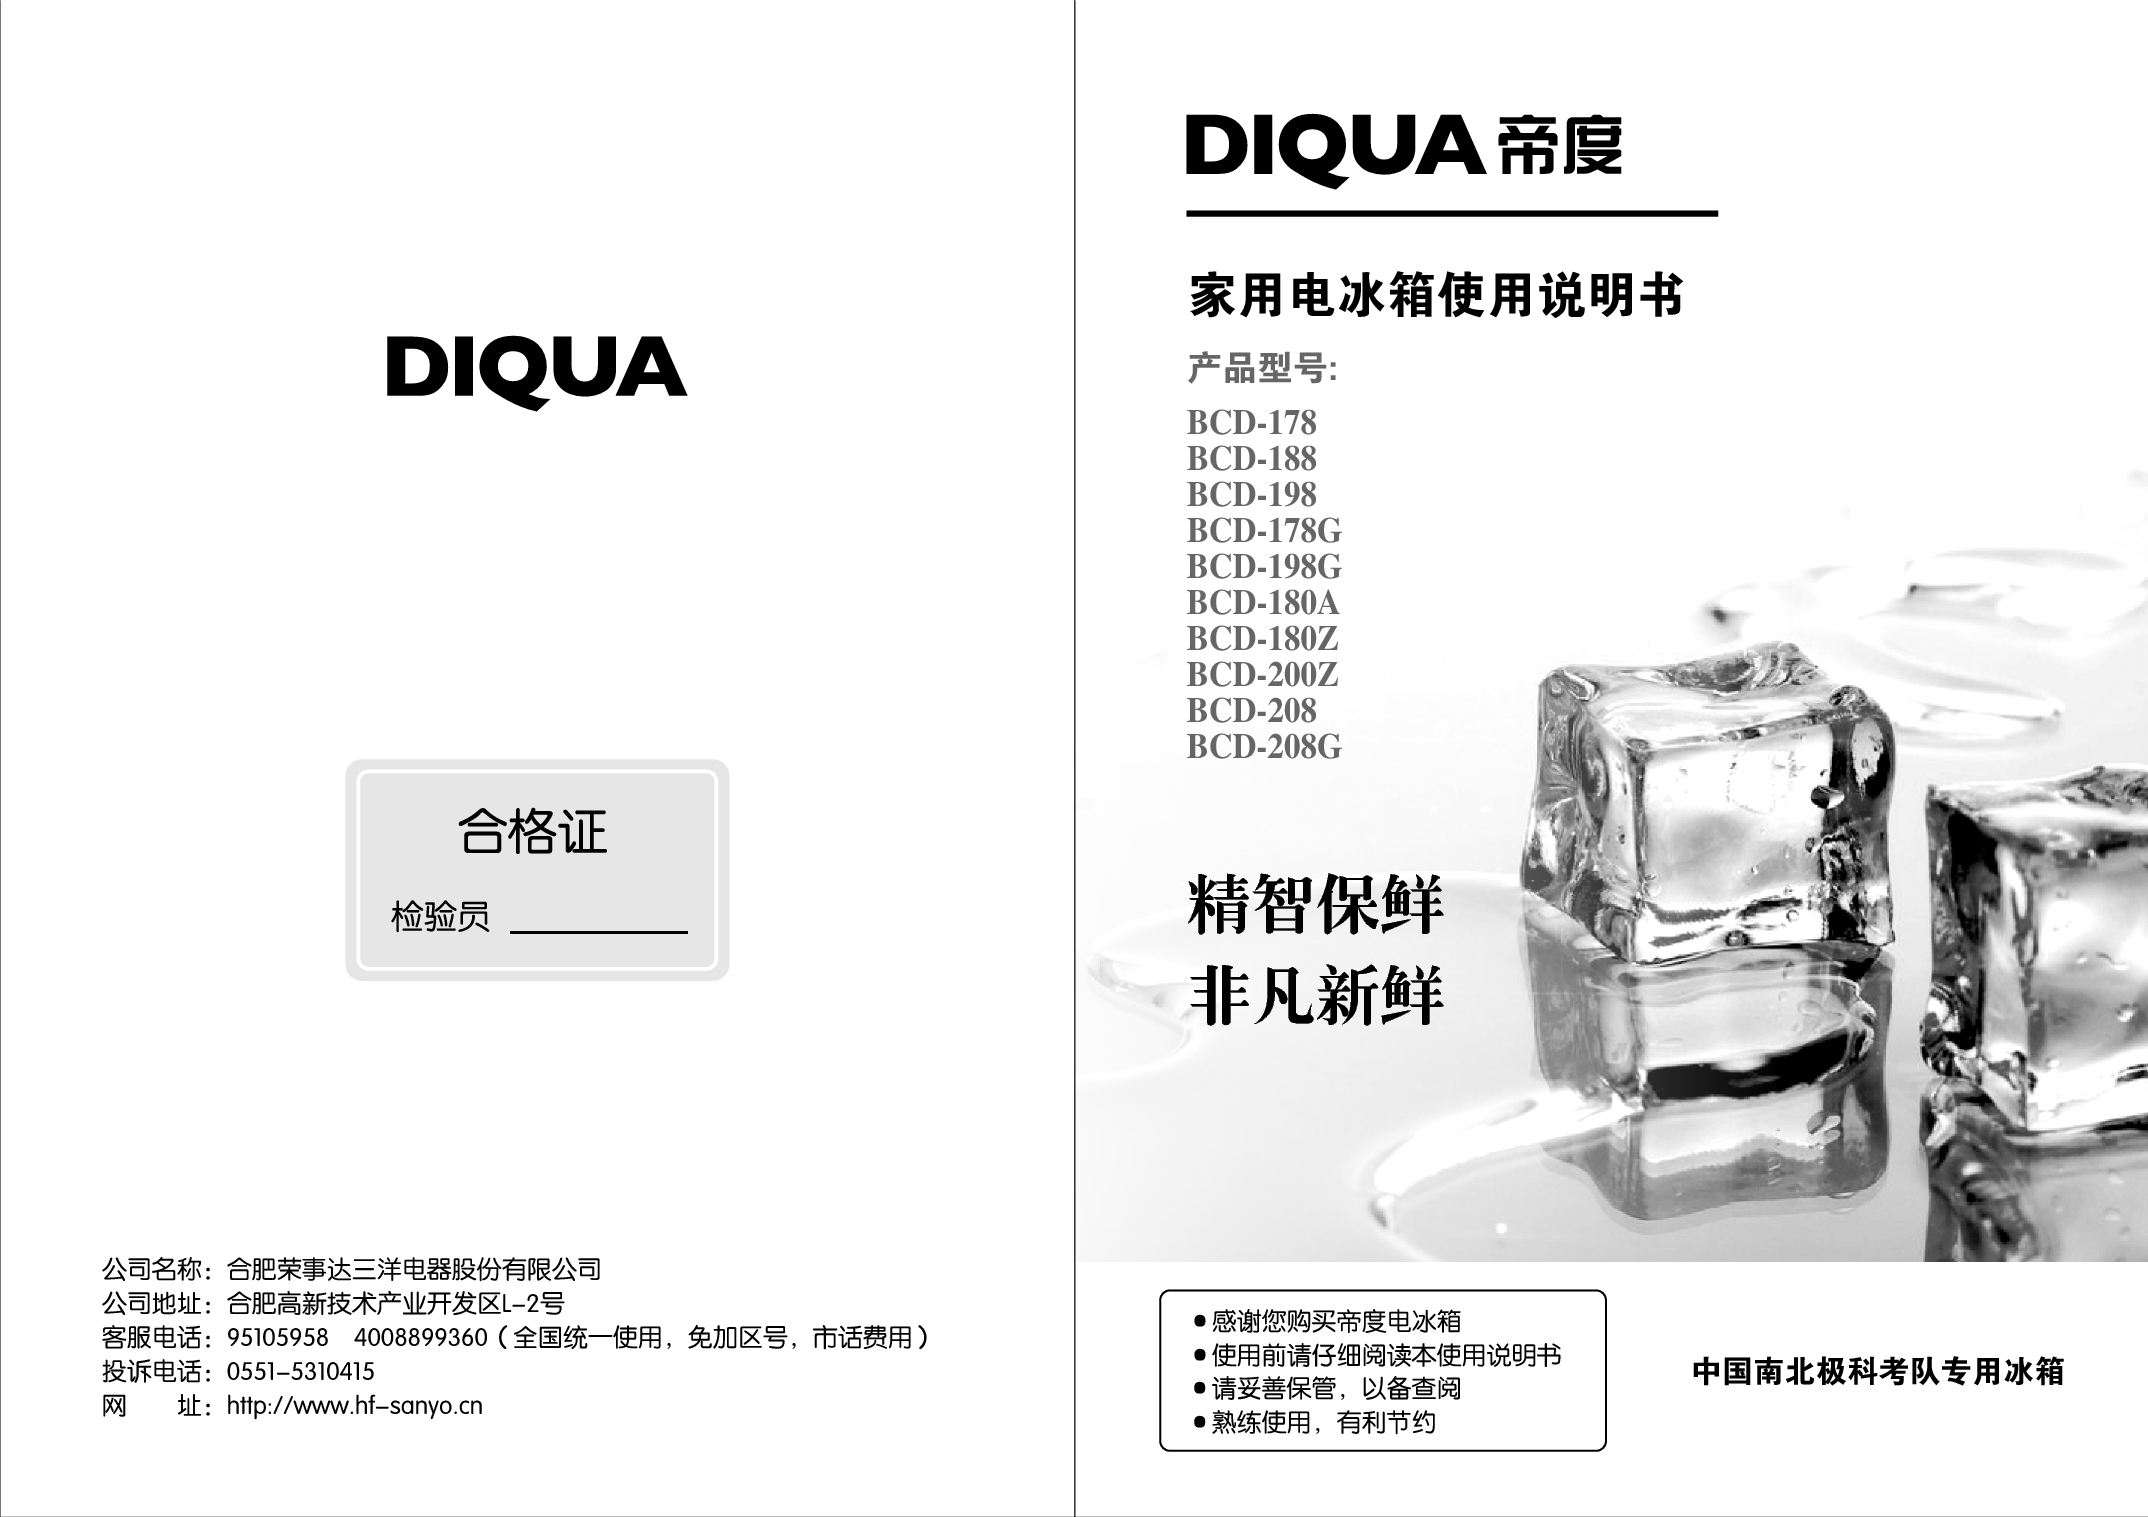 帝度 Diqua BCD-178, BCD-200Z 使用说明书 封面